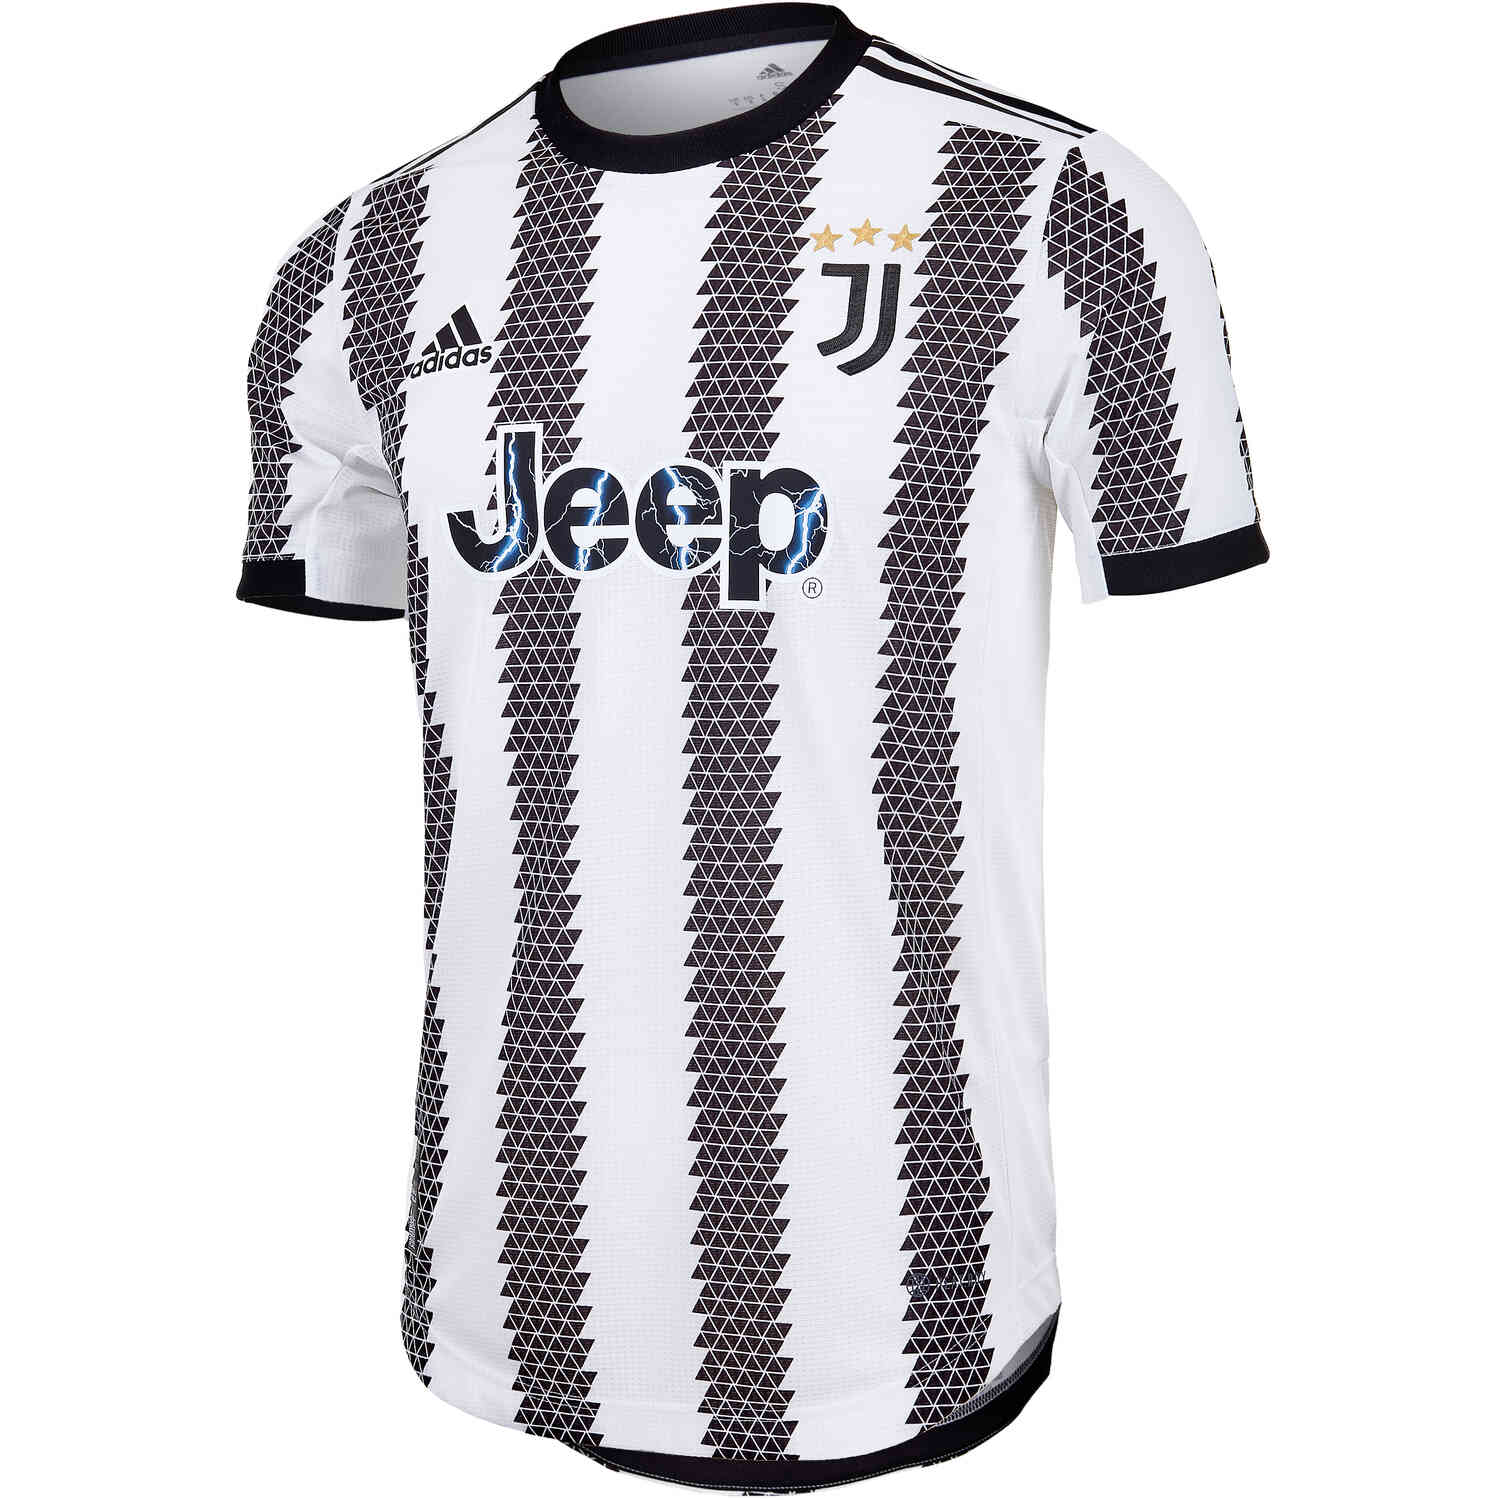 Adidas Men's Juventus 21/22 Home Jersey, White/Black / L